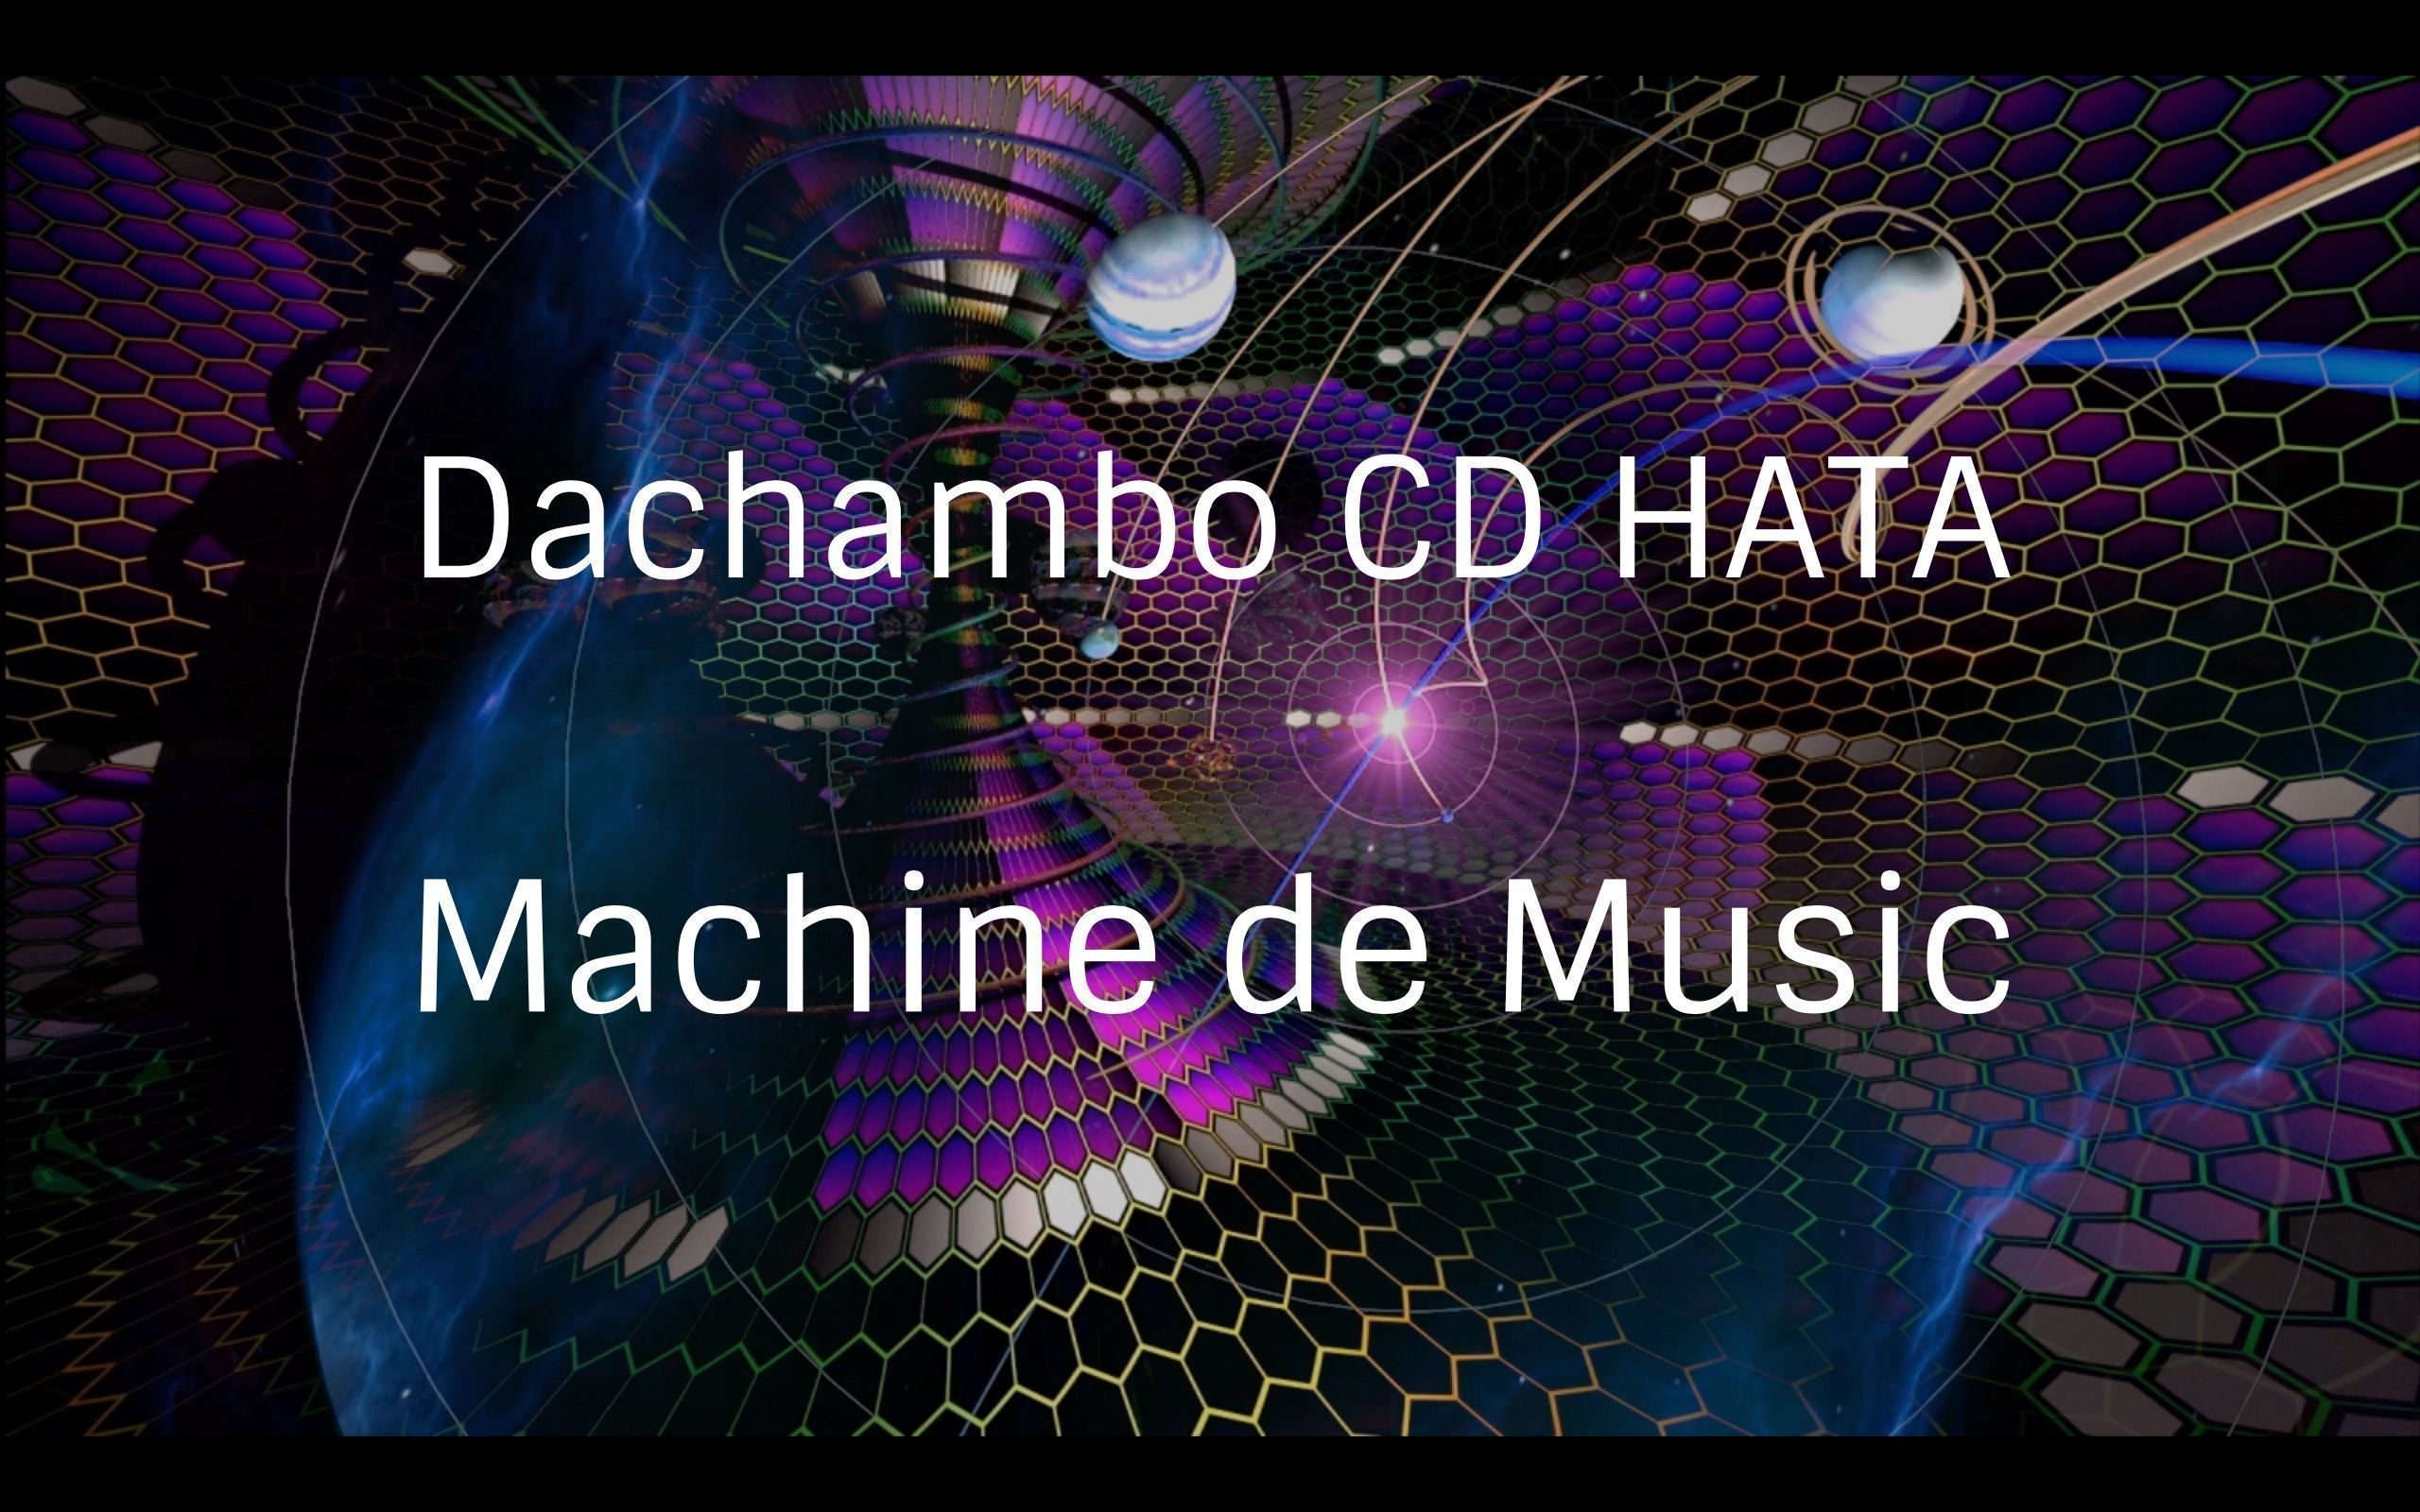 Dachambo CD HATAのMachine de Music コラムVol.47 
ナイスクレージー Sugar Bytes